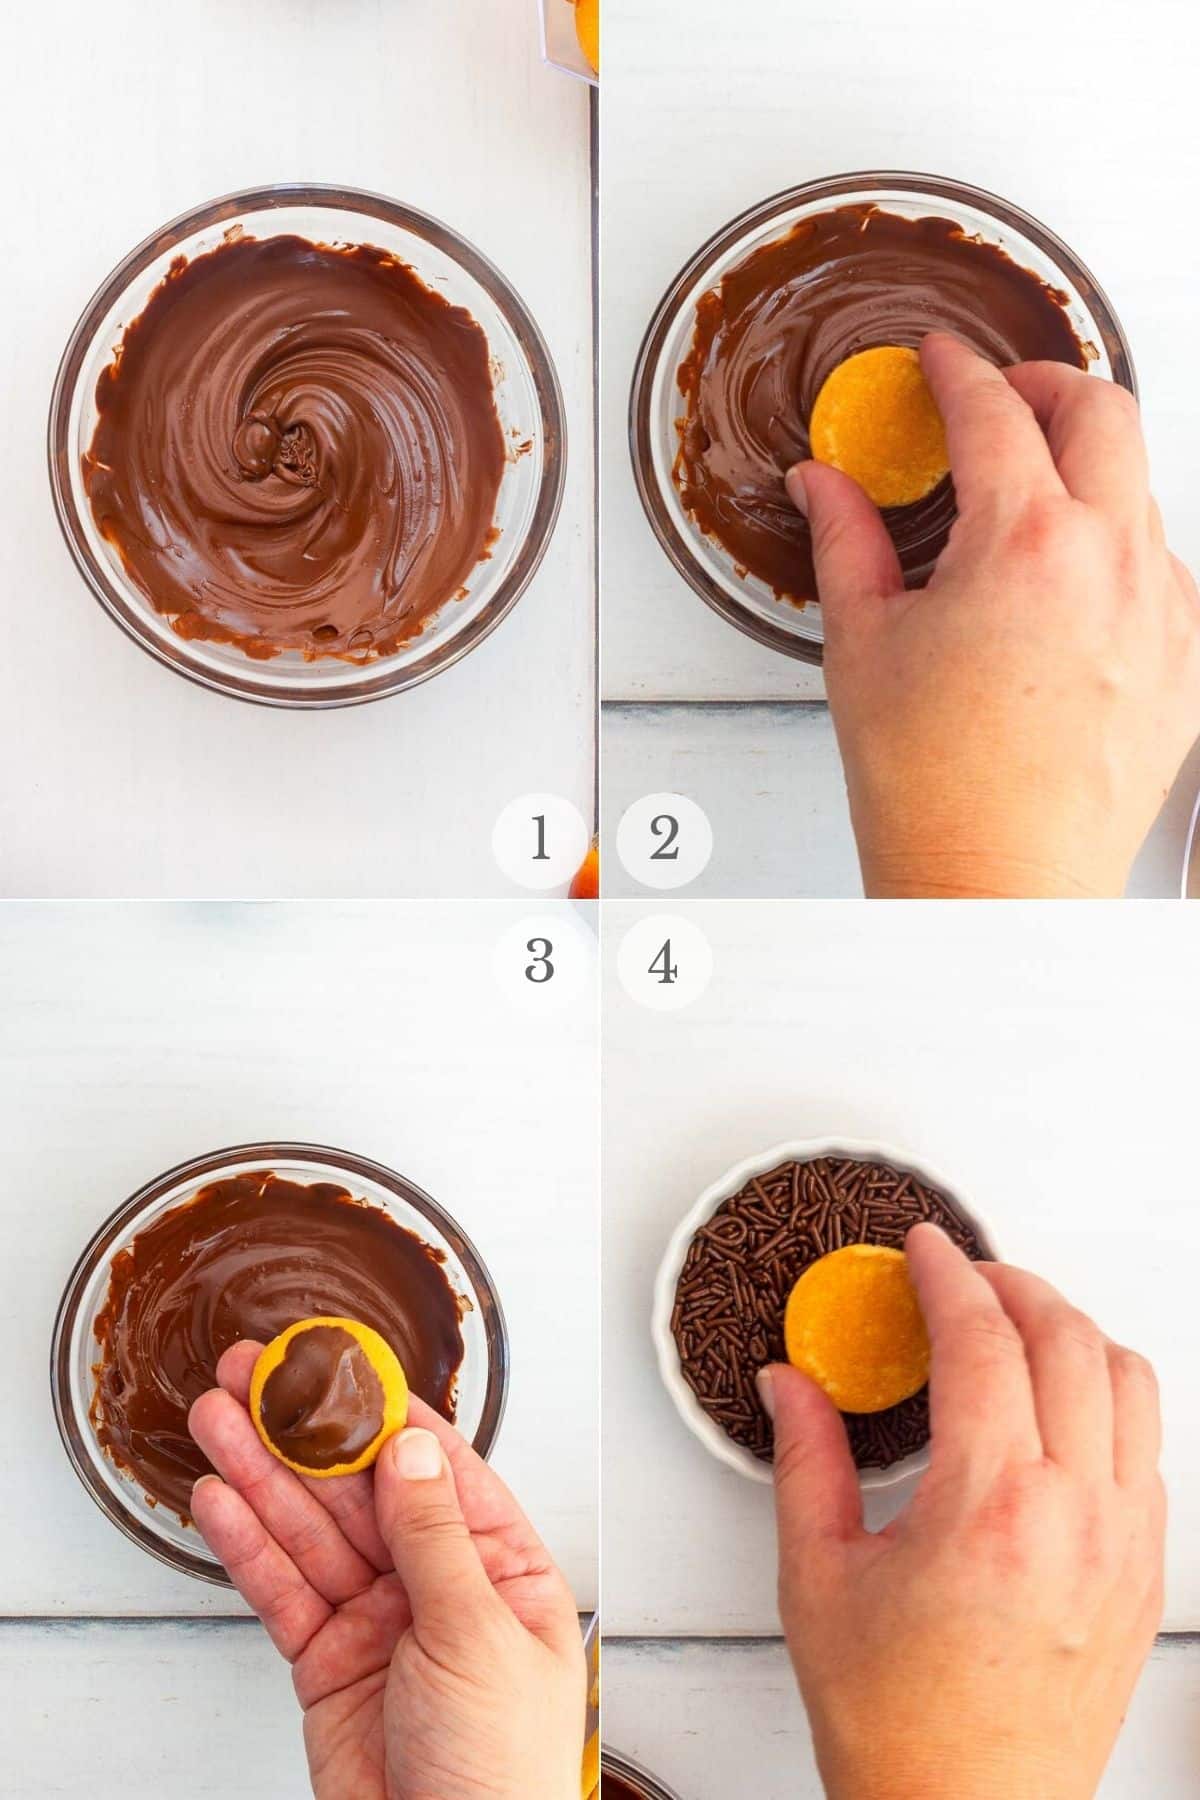 acorn brownie bites recipe steps 1-4